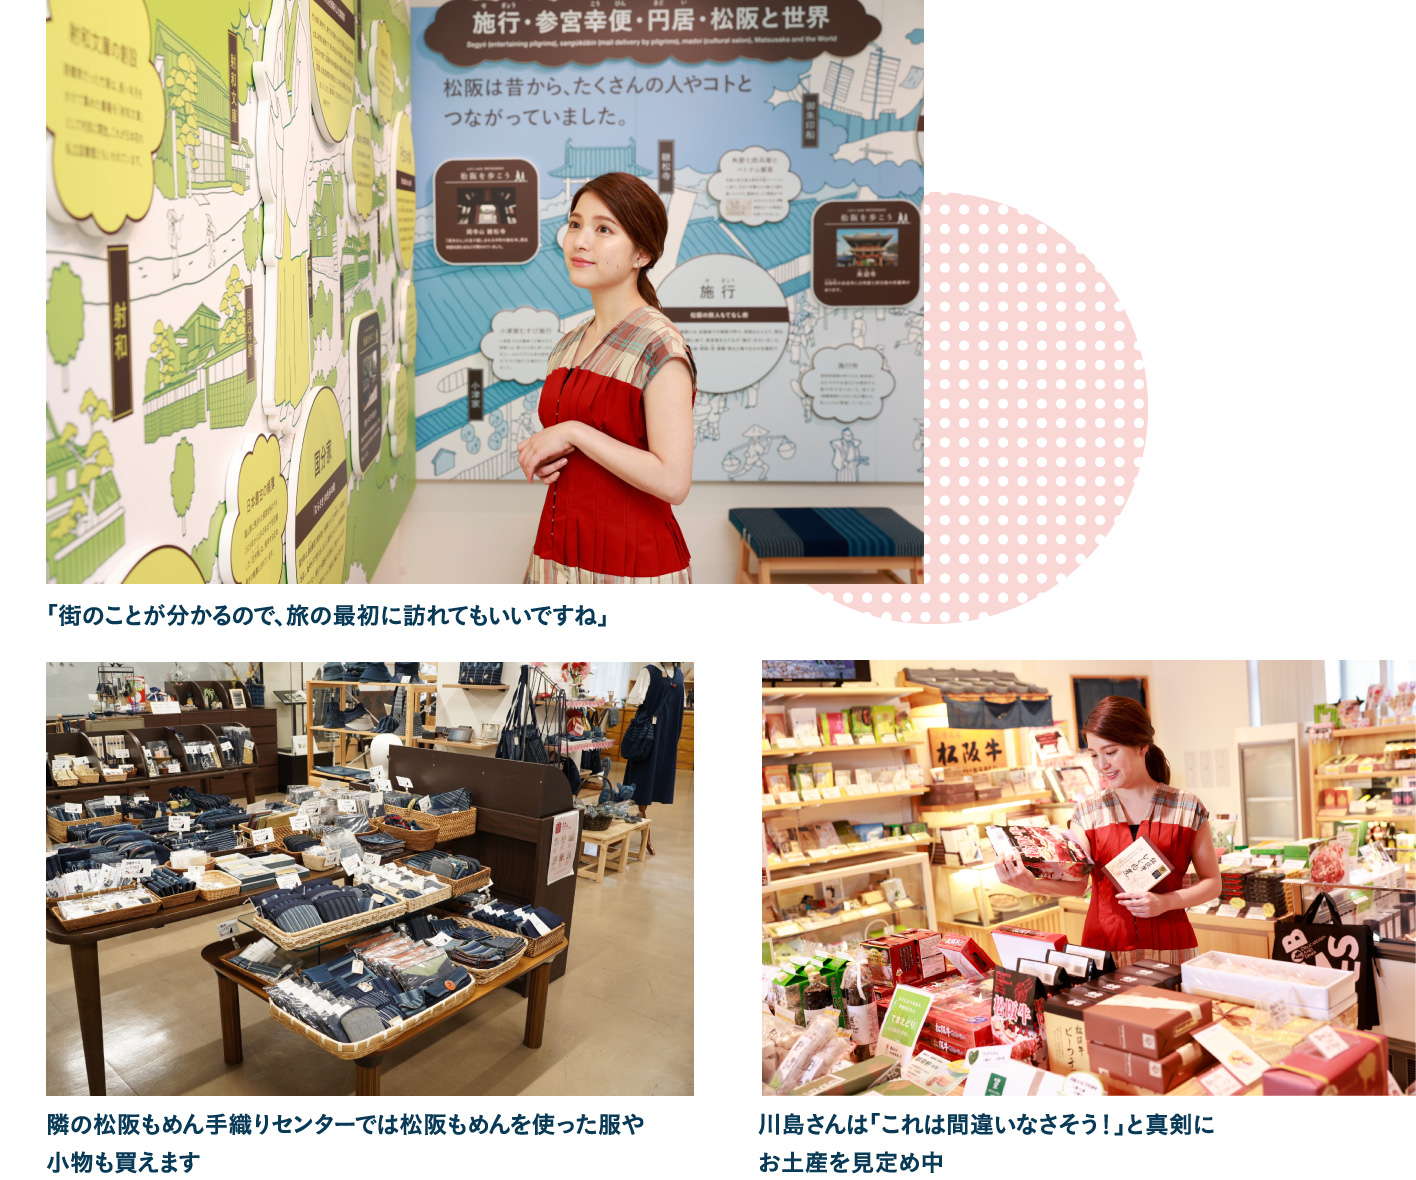 豪商のまち松阪 観光交流センター・松阪もめん手織りセンターで街の歴史を知る